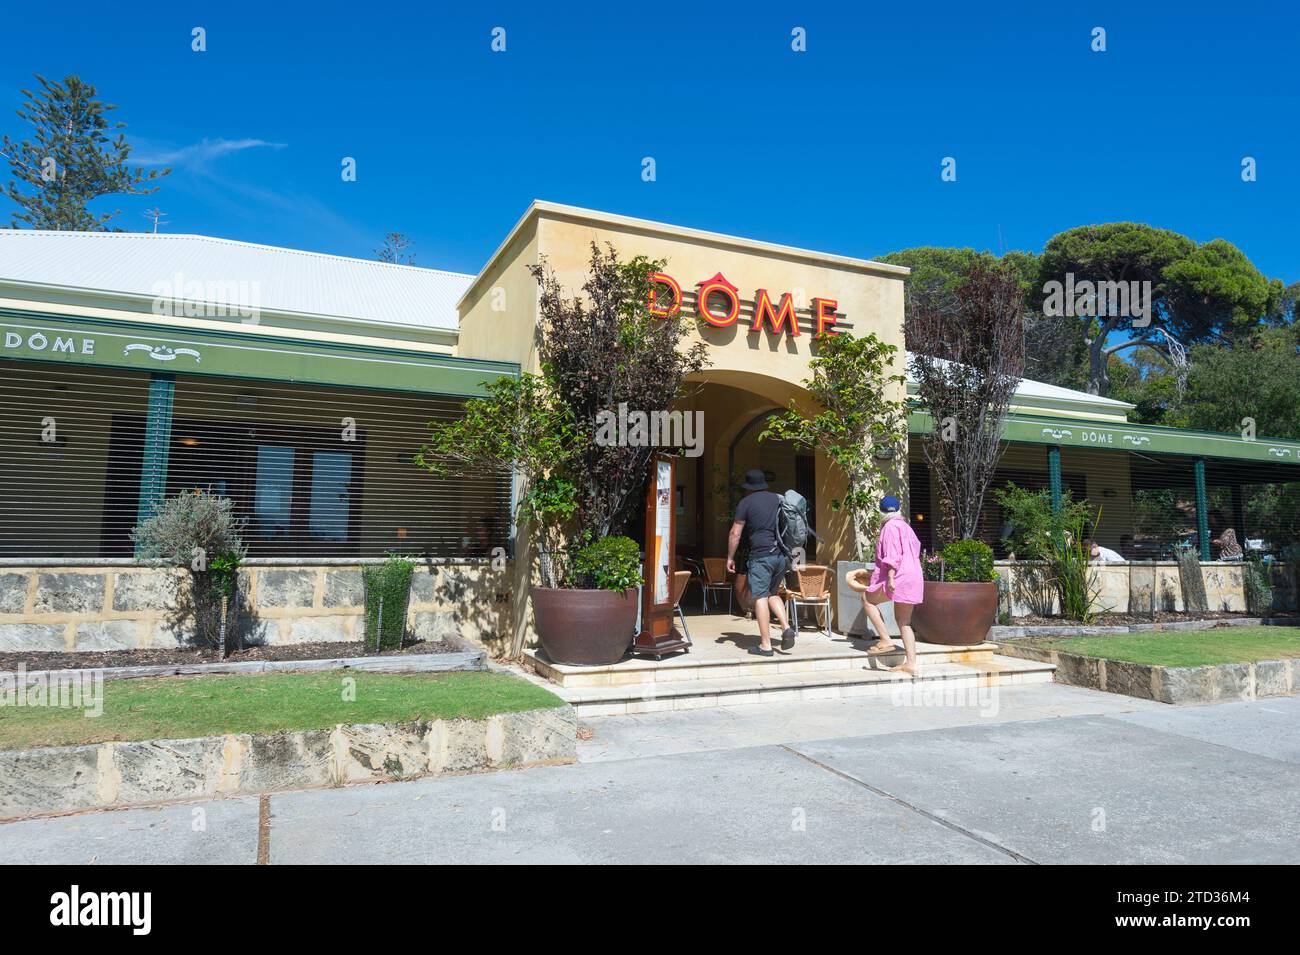 Touristes entrant dans le restaurant populaire Dôme sur Rottnest Island ou Wadjemup, Australie occidentale, Australie Banque D'Images